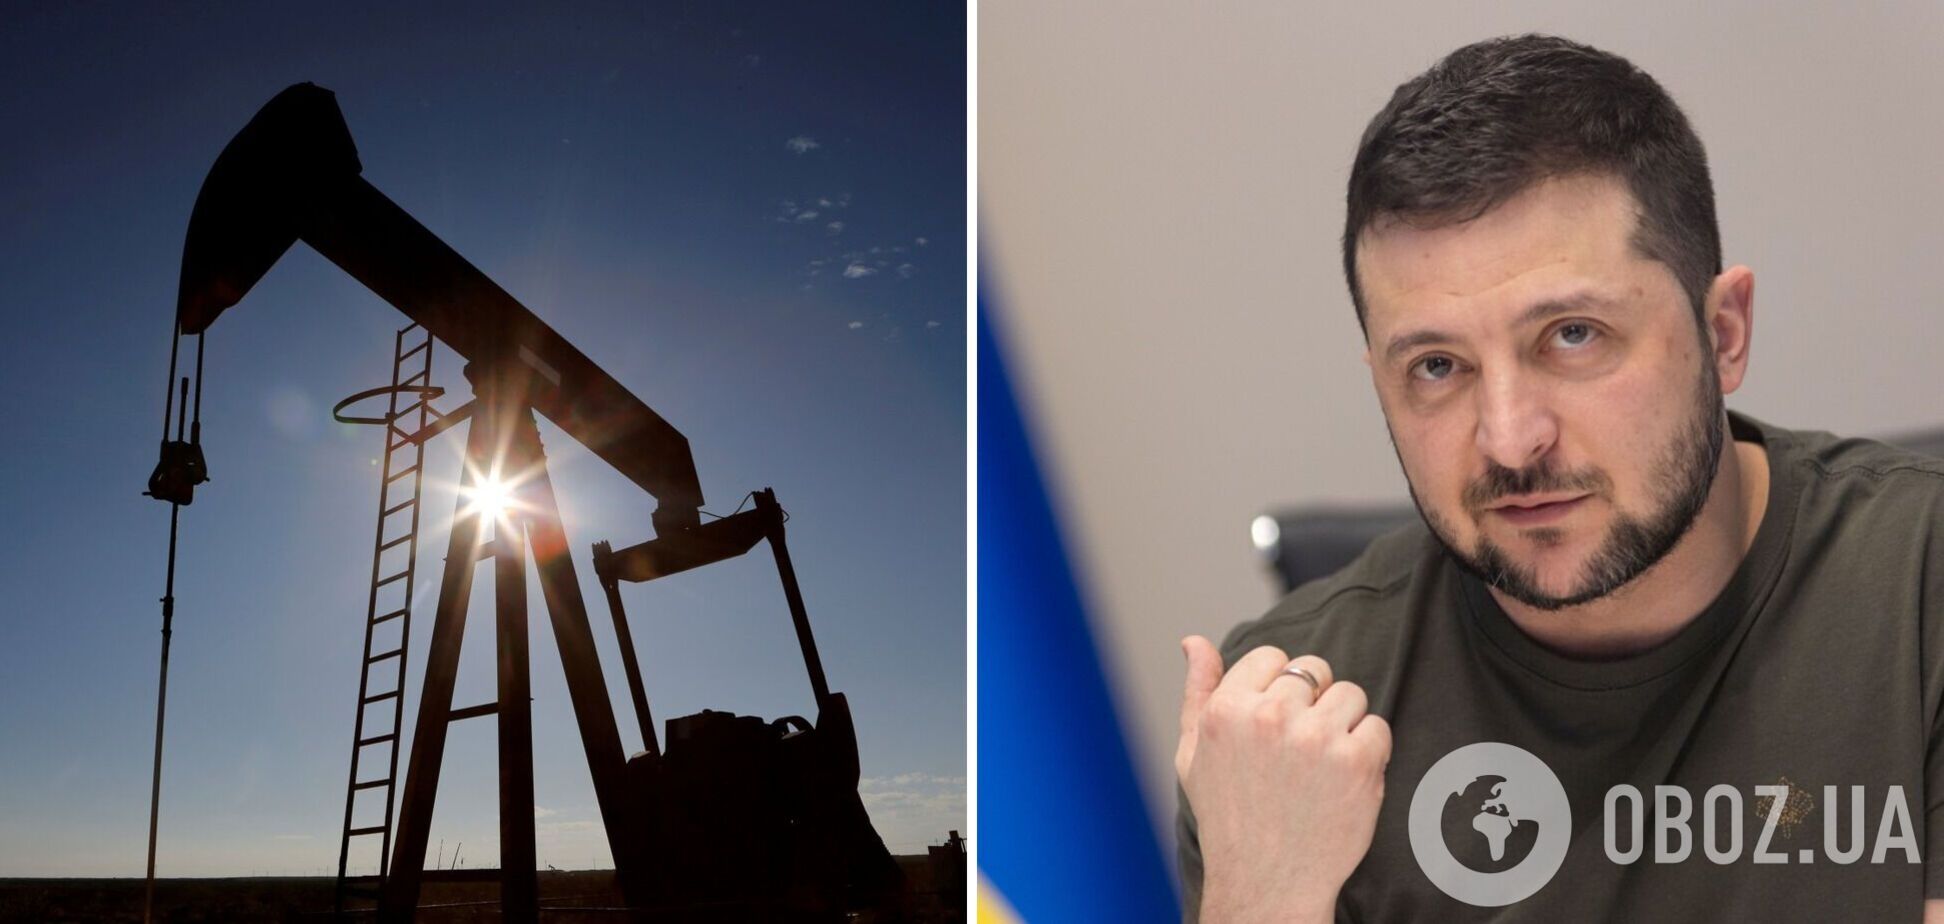 Давно настав час саме таких санкцій проти РФ: Зеленський про рішення G7 щодо російської нафти